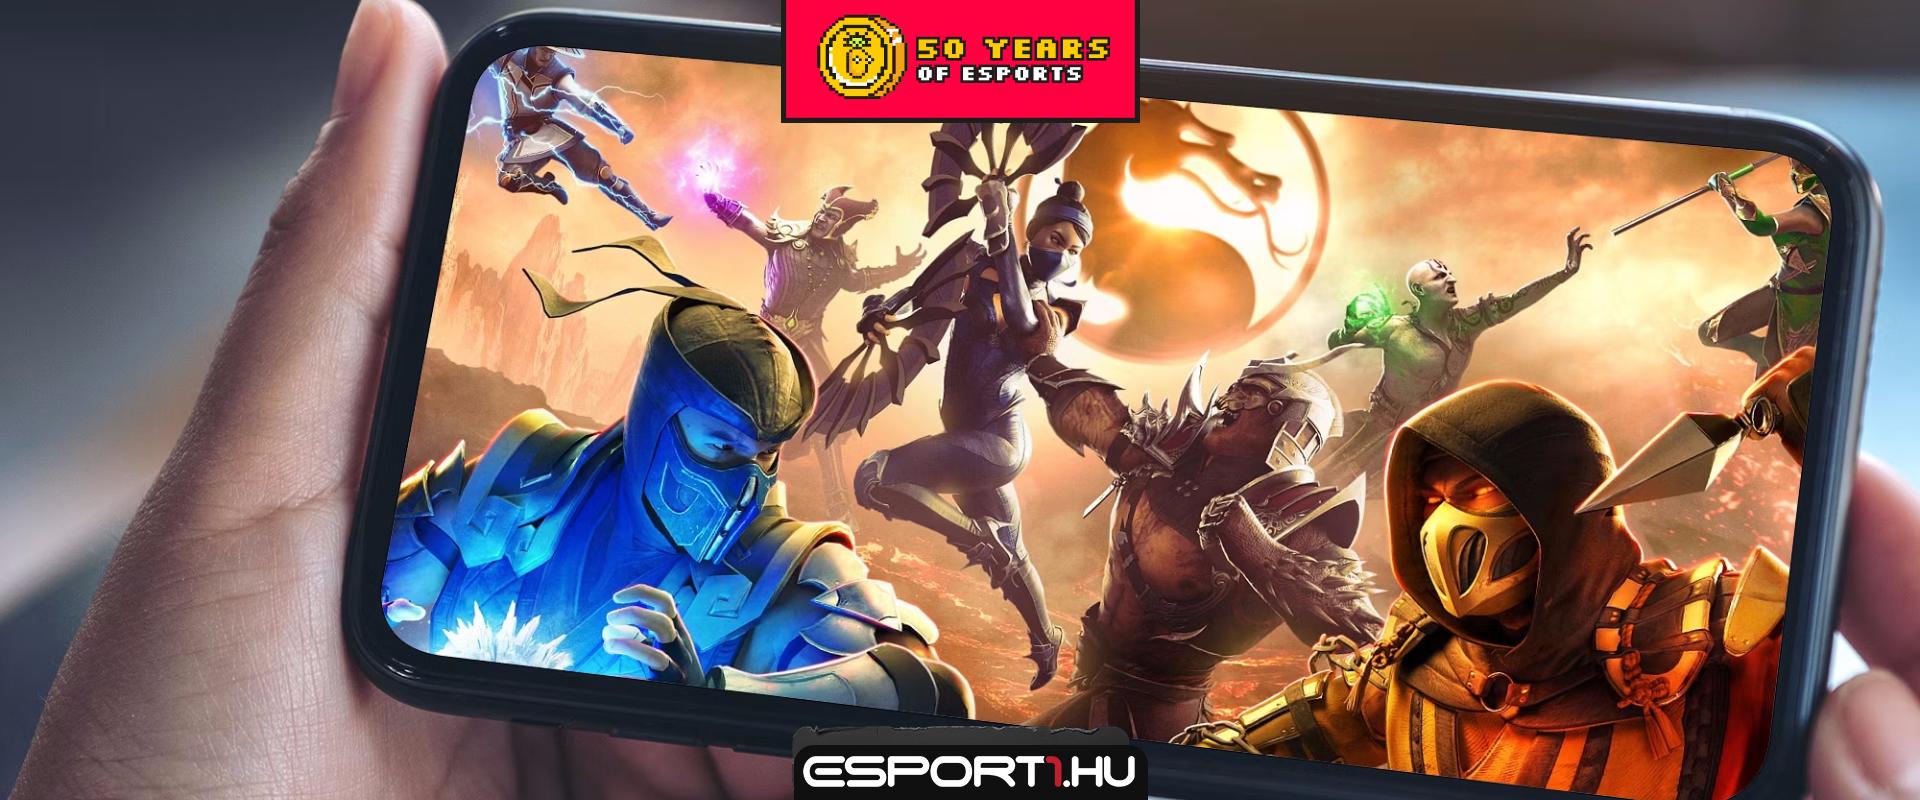 Sikerült letaglózni a Mortal Kombat rajongókat az új játékbejelentéssel